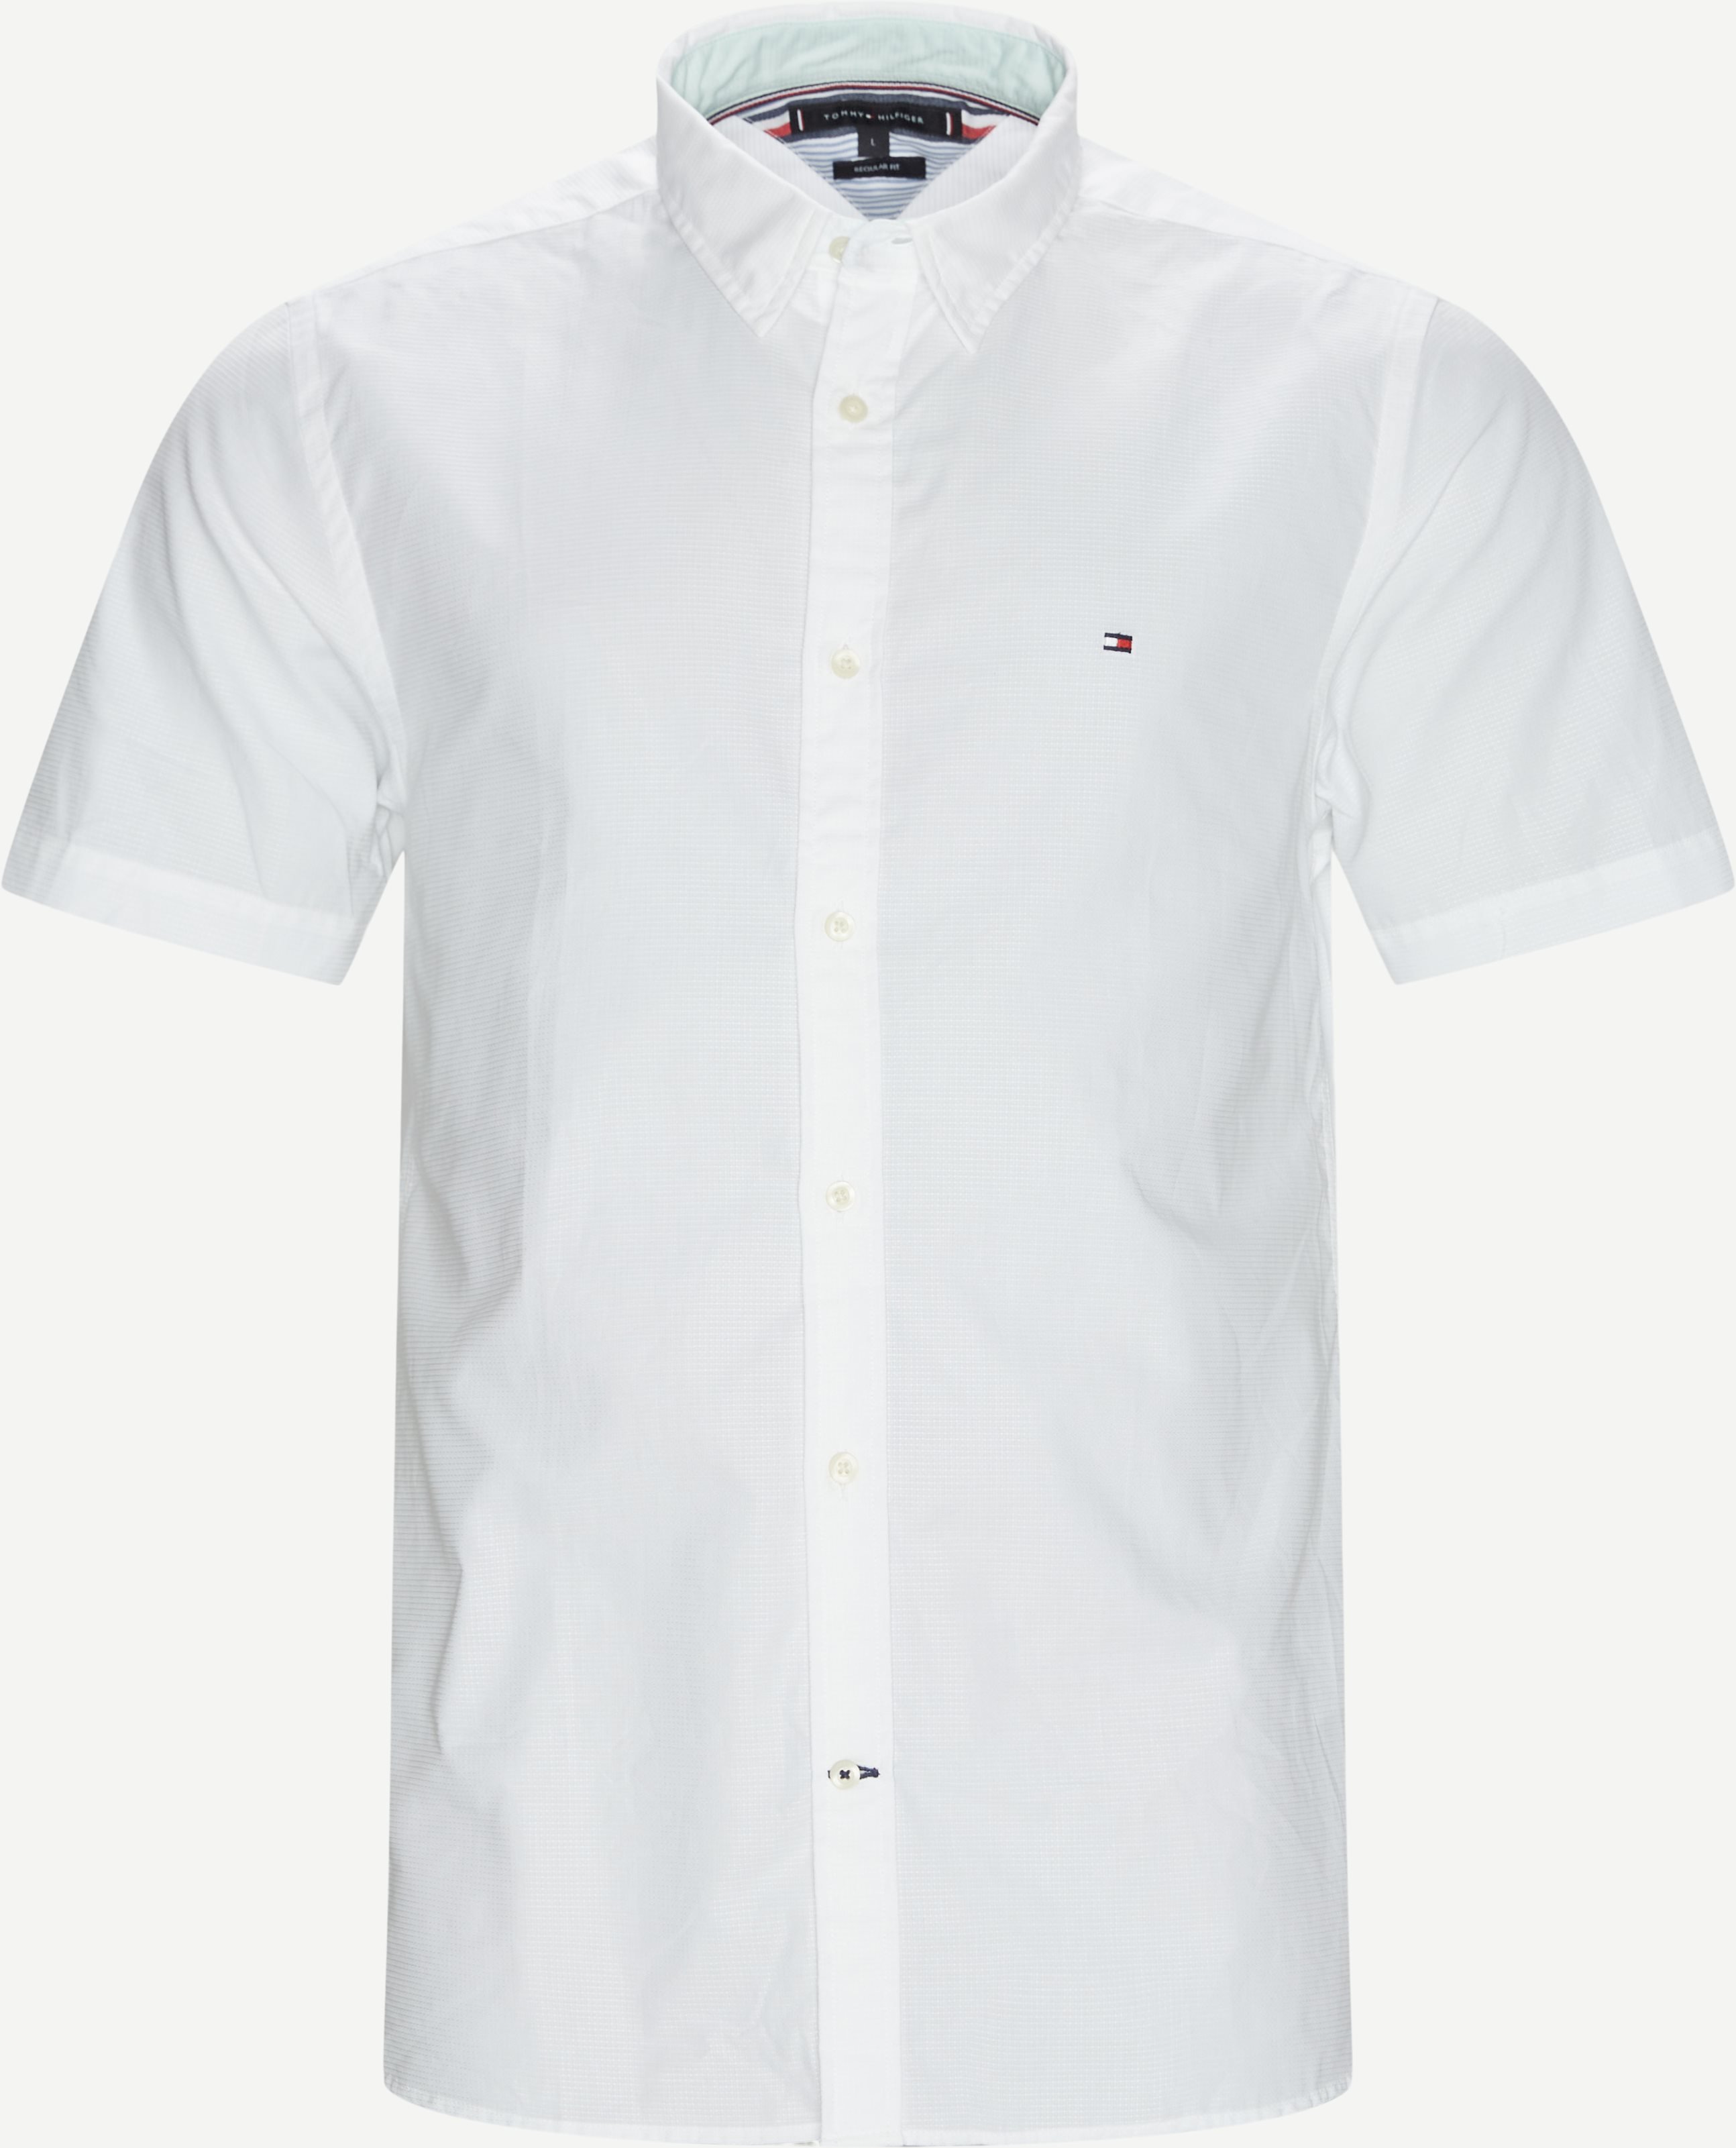 Grid Dobby K/Æ Skjorte - Short-sleeved shirts - Regular fit - White